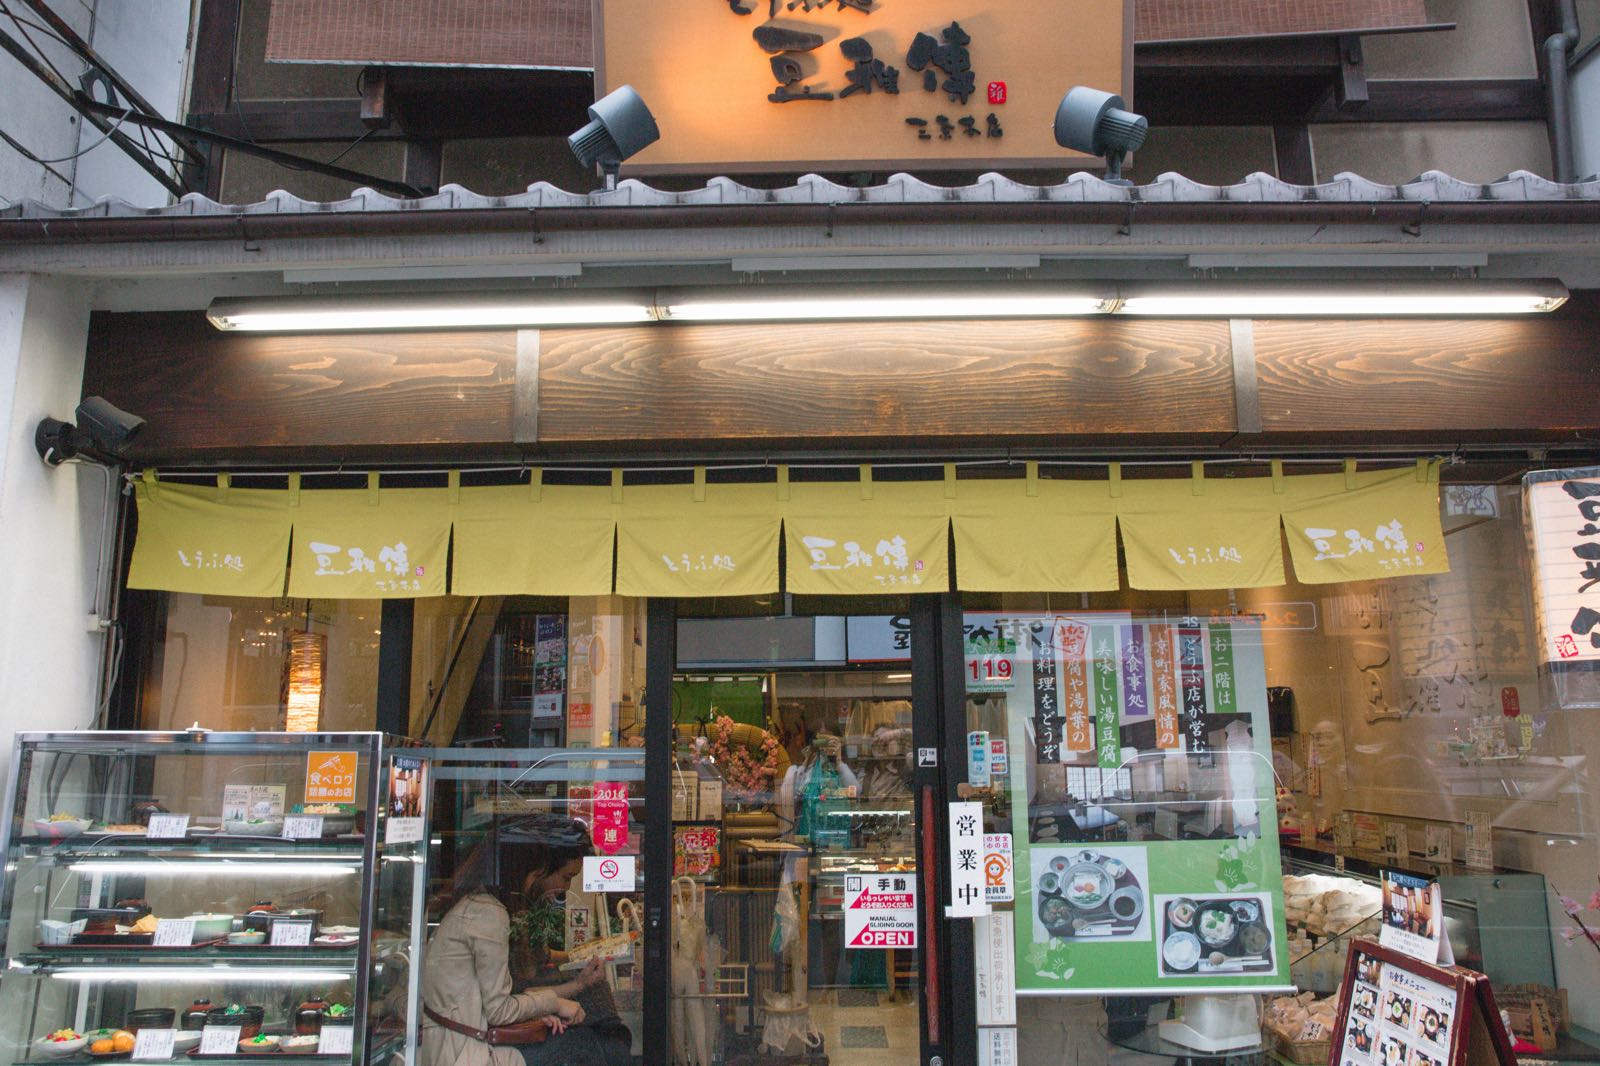 午餐是在京都的最后一餐，豆雅传豆腐料理，一楼是售卖豆制品的商铺，二楼供